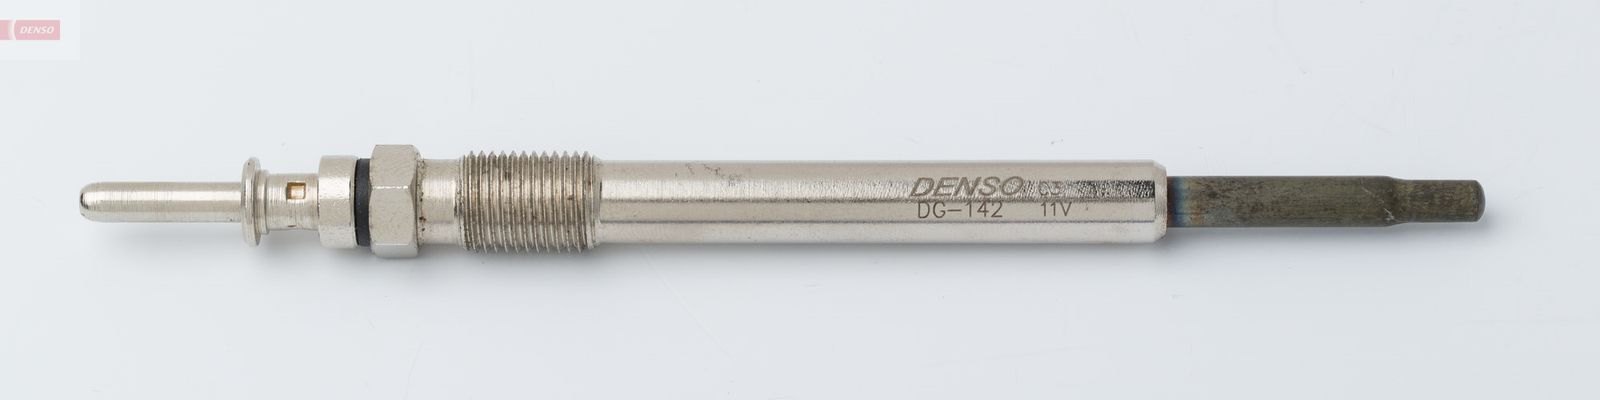 Žhavící svíčka DENSO DG-142